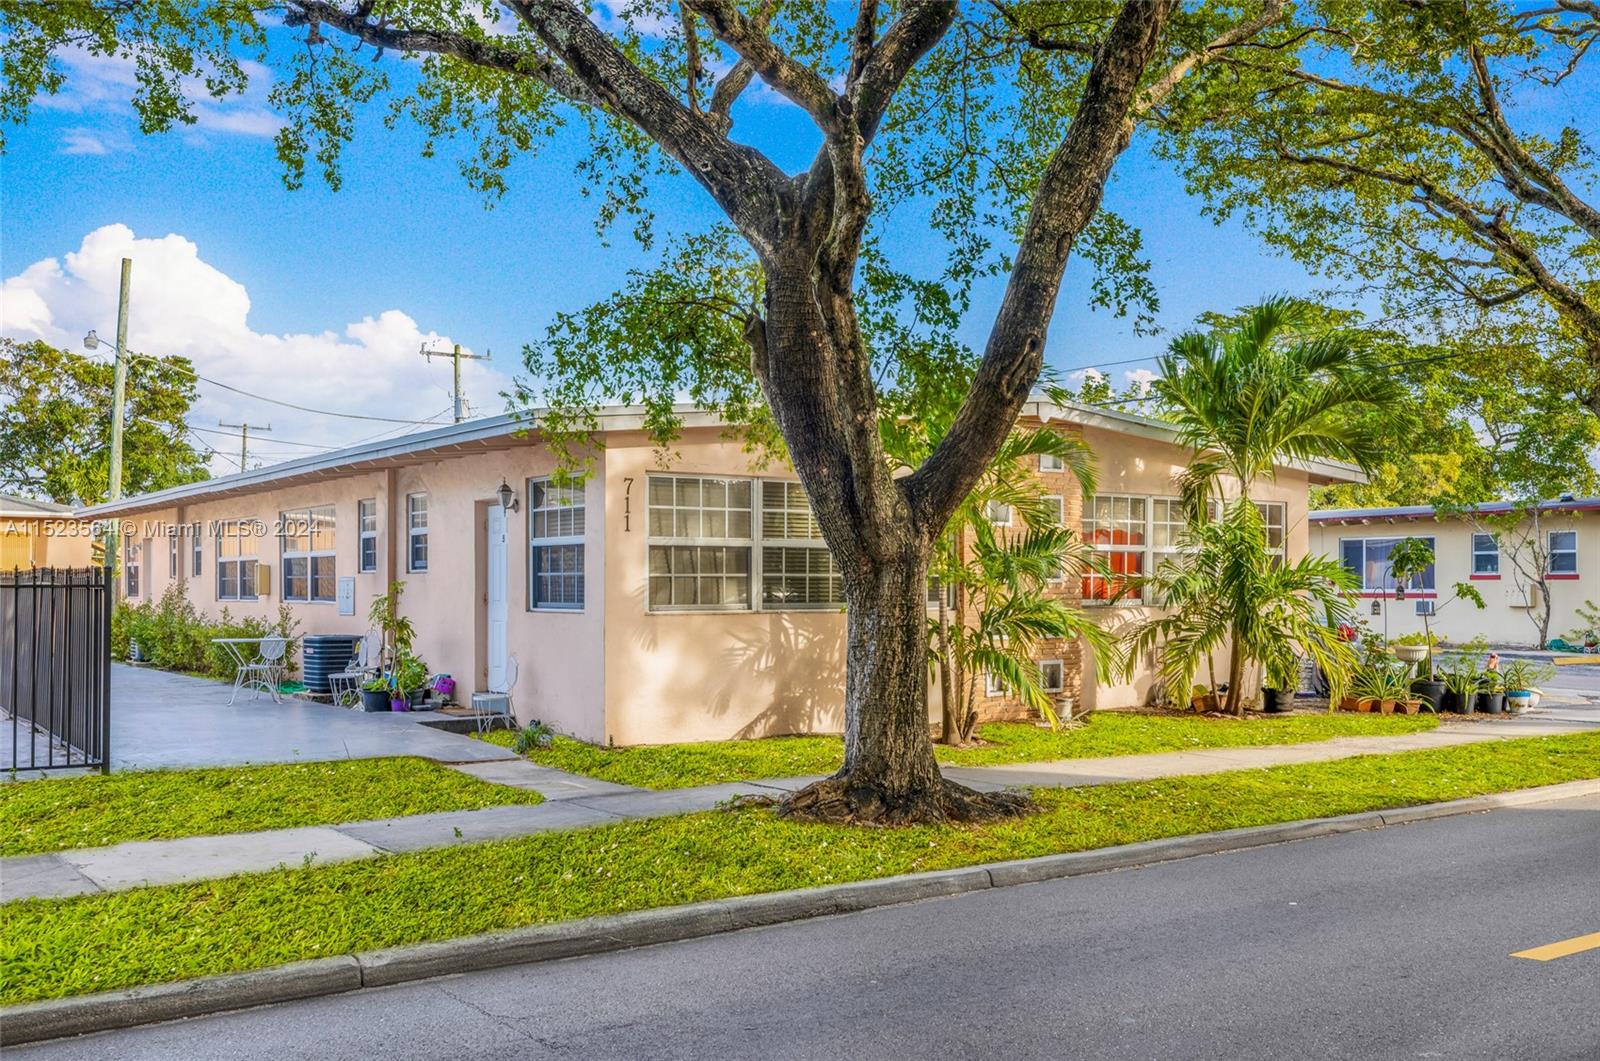 Rental Property at 711 S 20th Ave, Hollywood, Broward County, Florida -  - $950,000 MO.